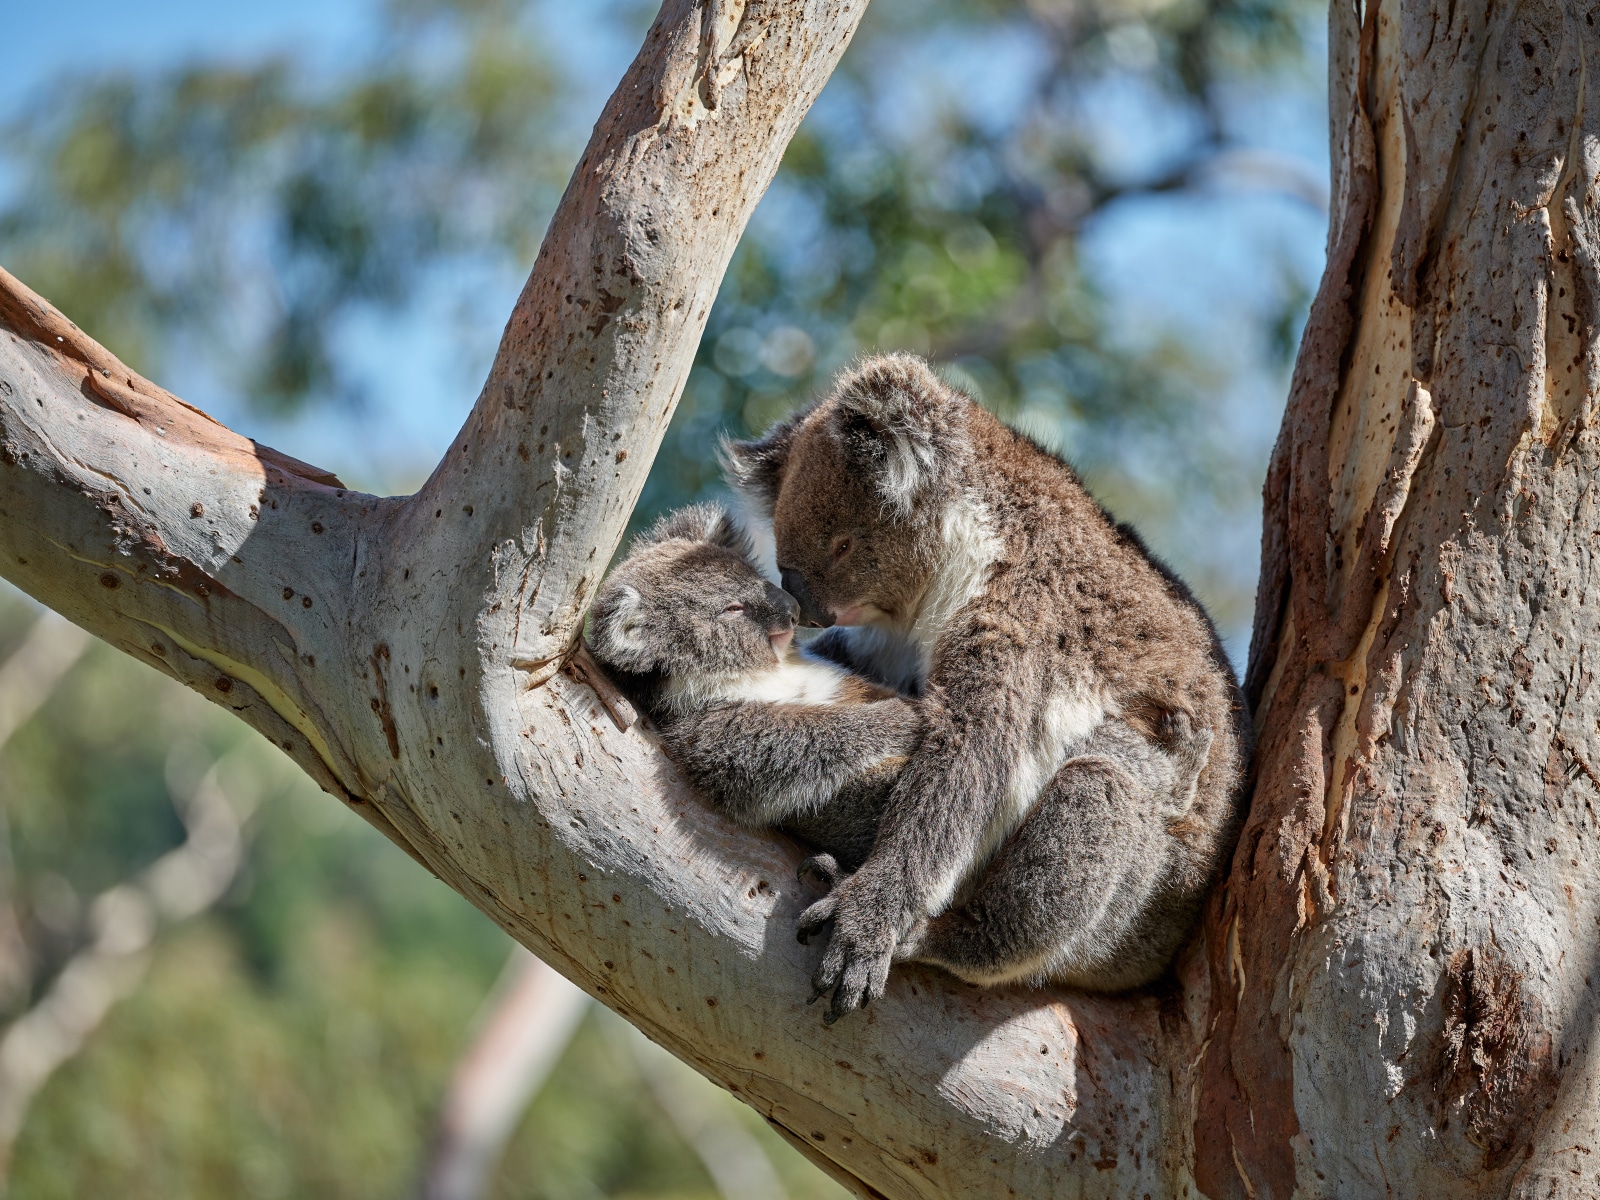 Where to have a koala encounter - Tourism Australia